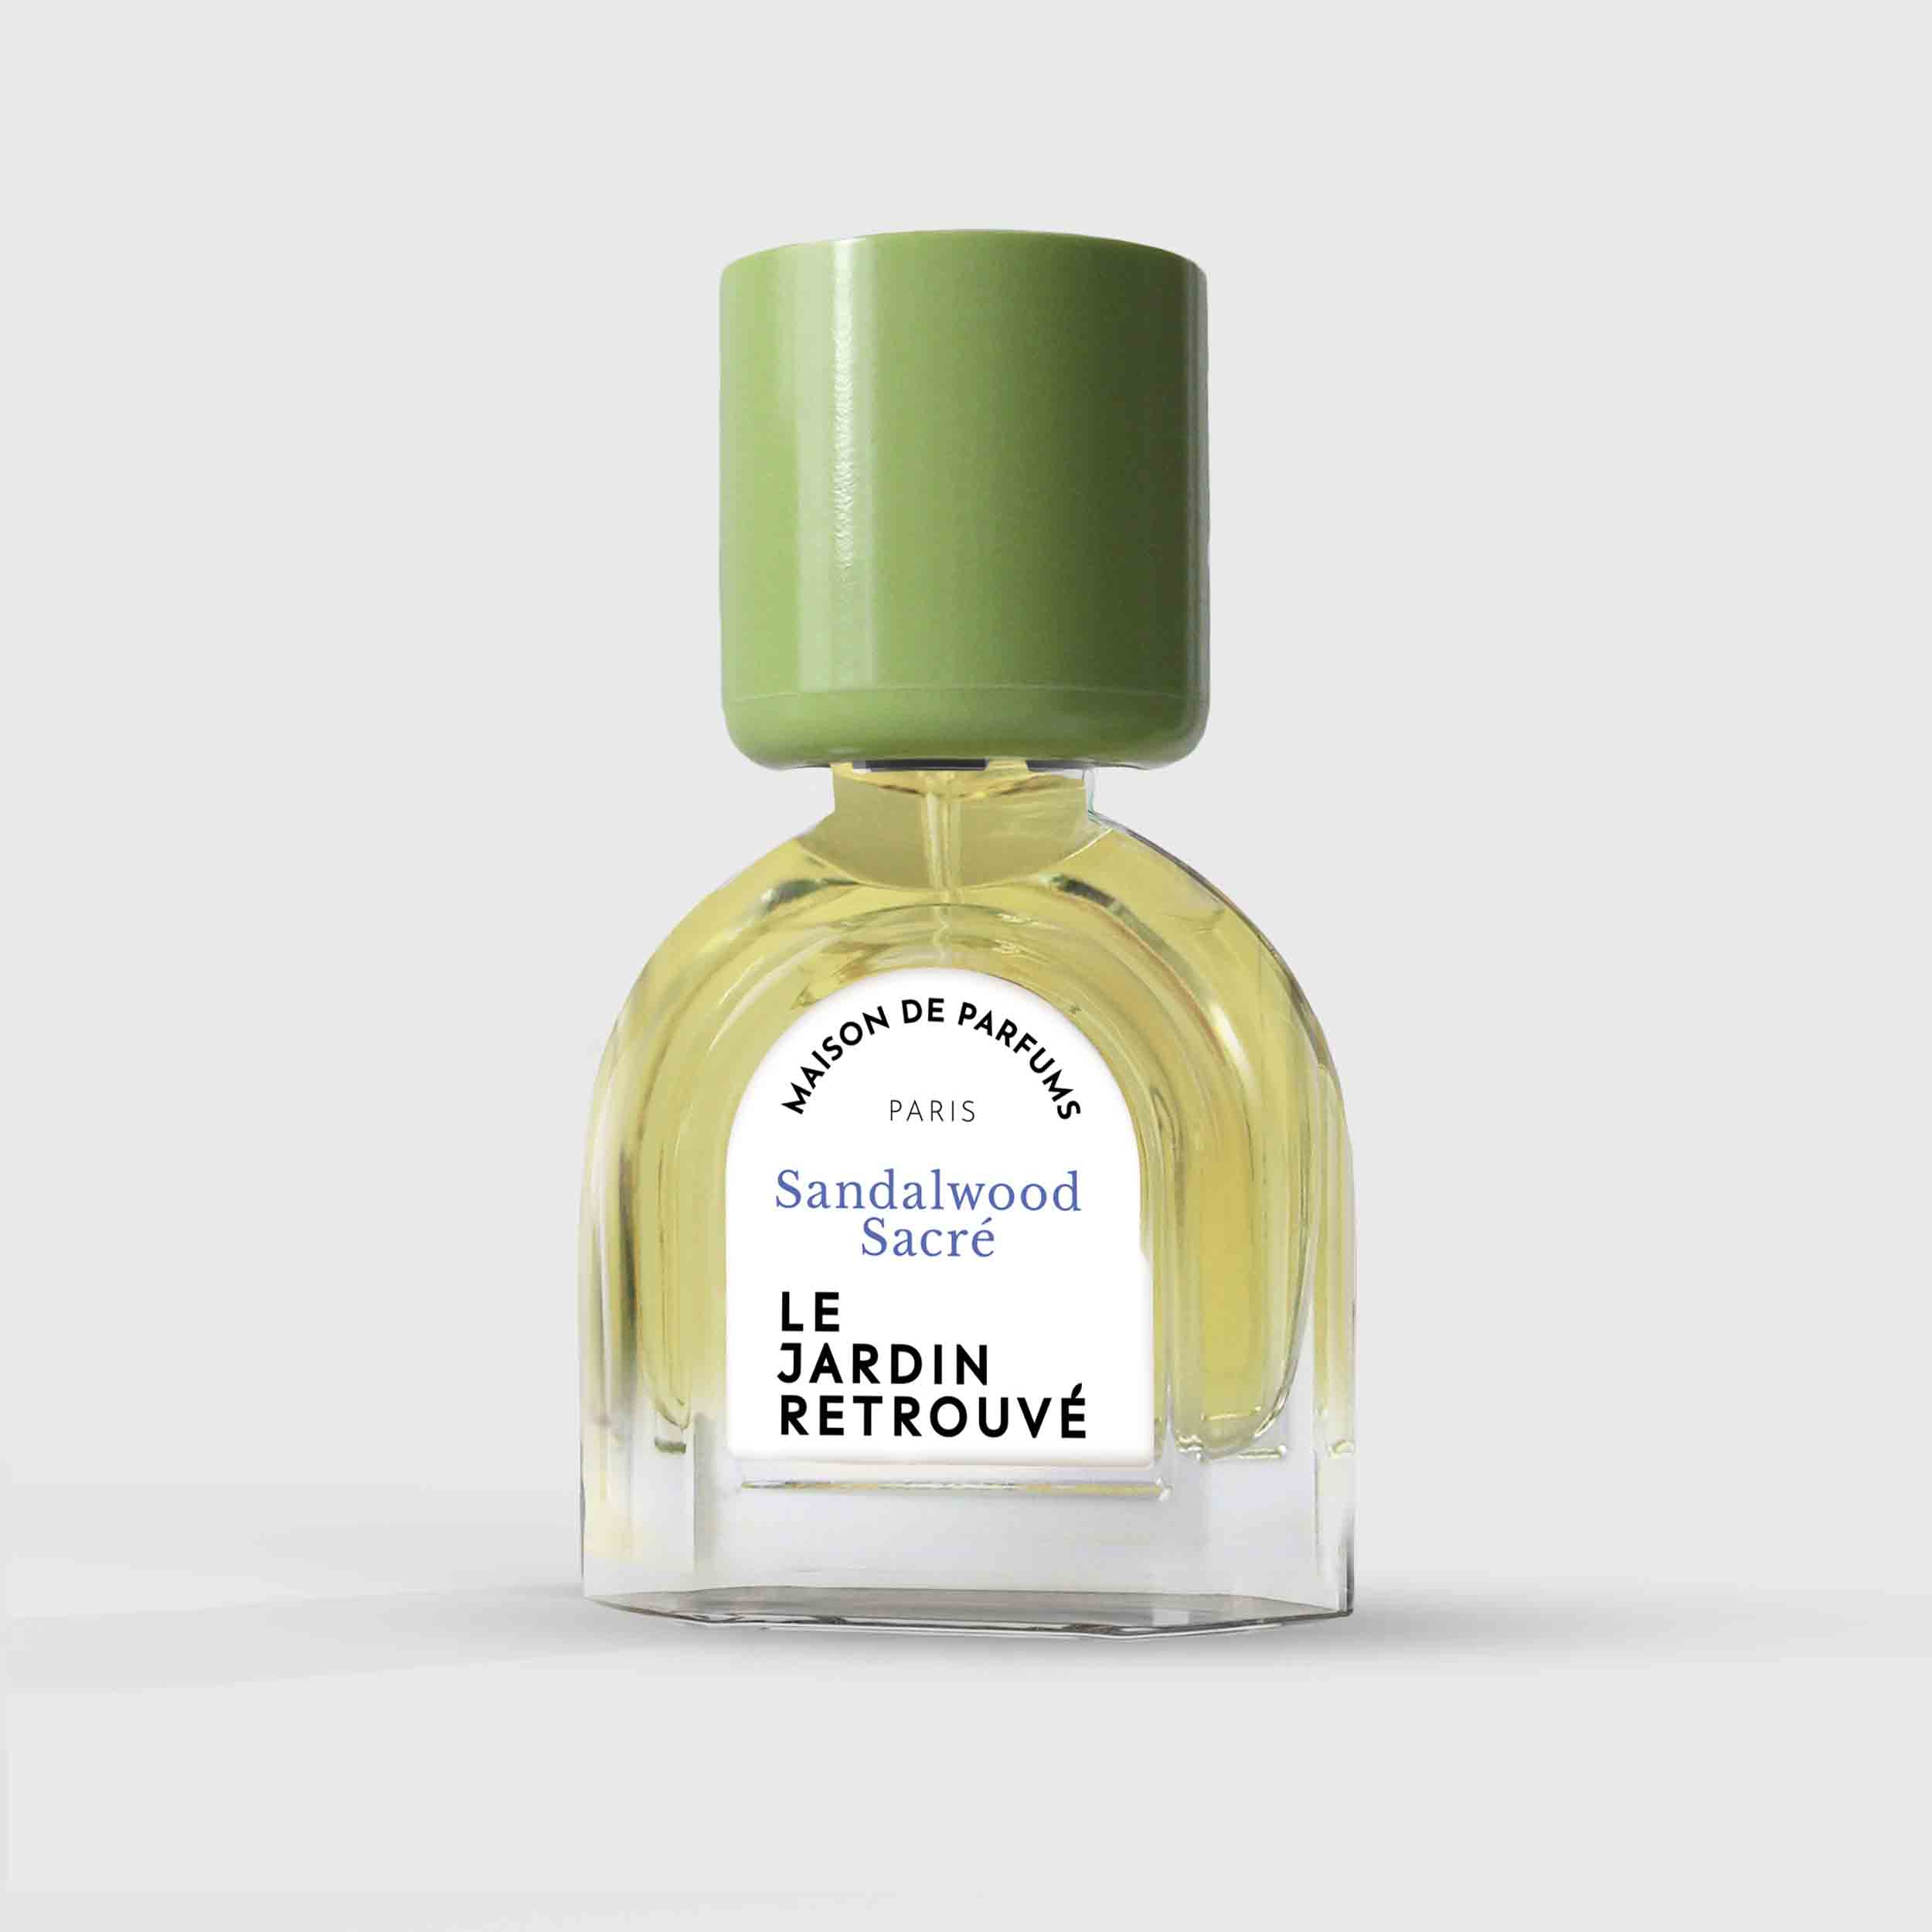 Sandalwood Sacré Eau de Parfum 15ml Bottle by Le Jardin Retrouvé